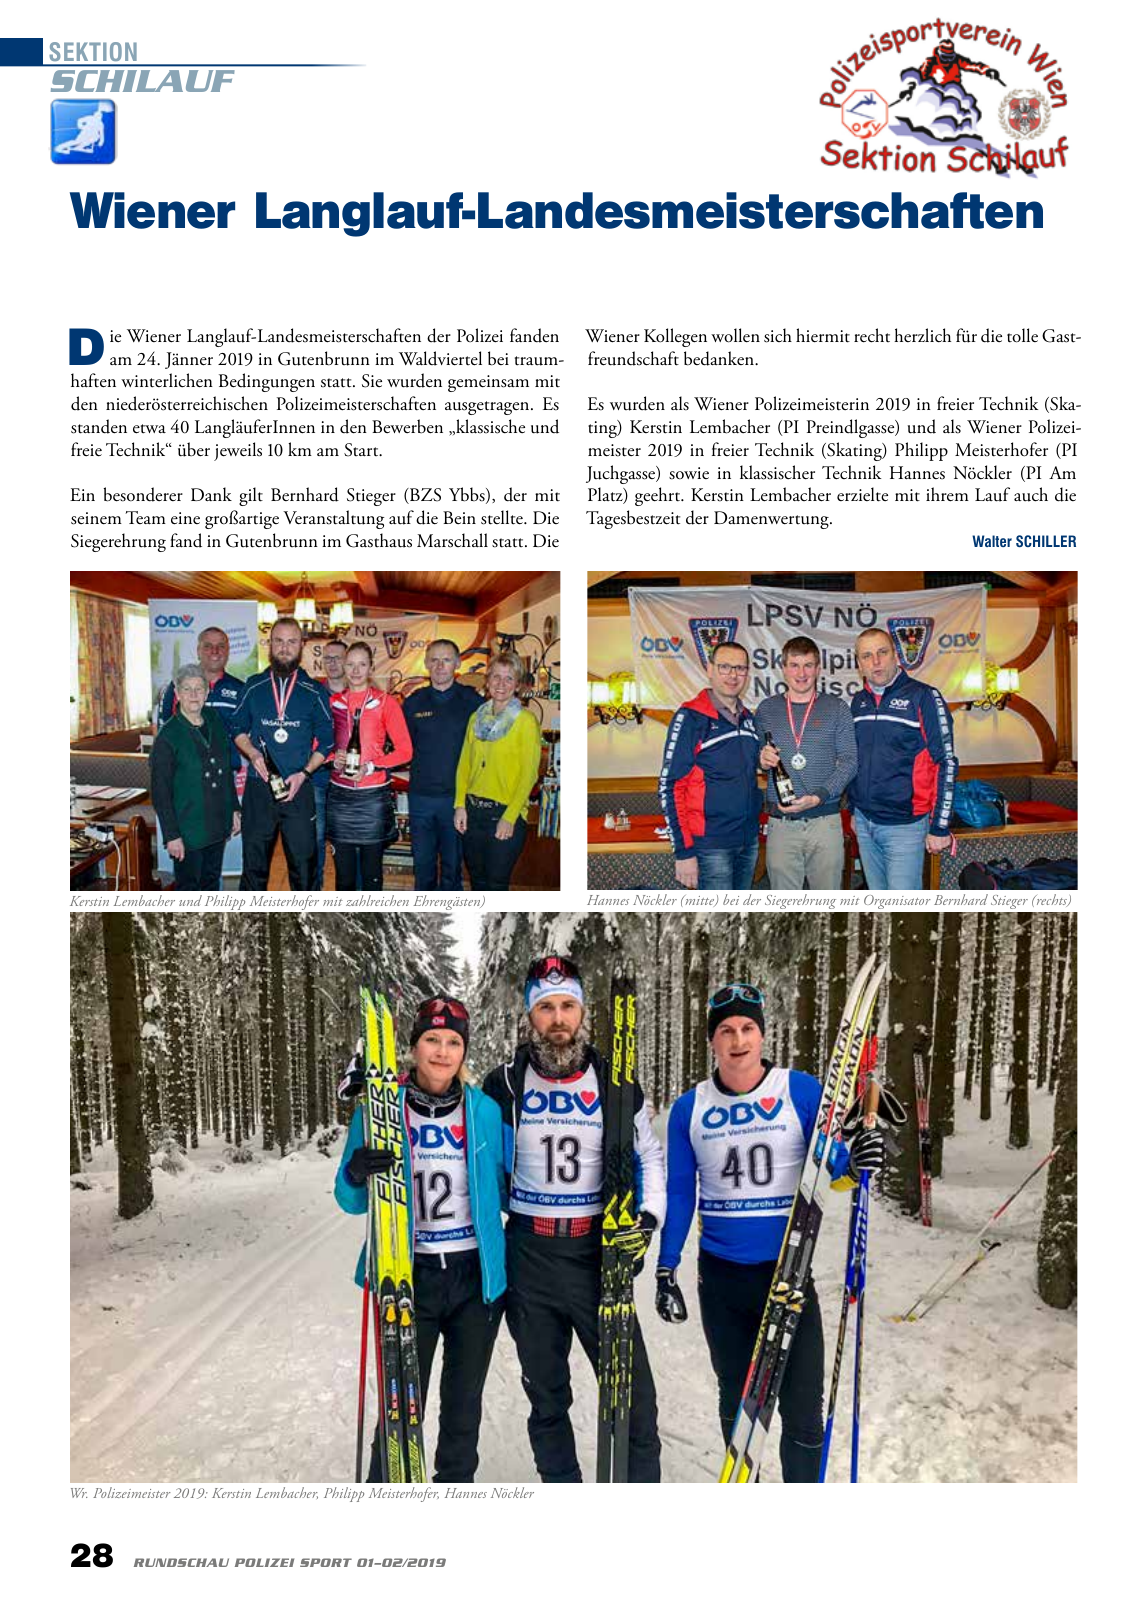 Vorschau Rundschau Polizei Sport 01-02/2019 Seite 28